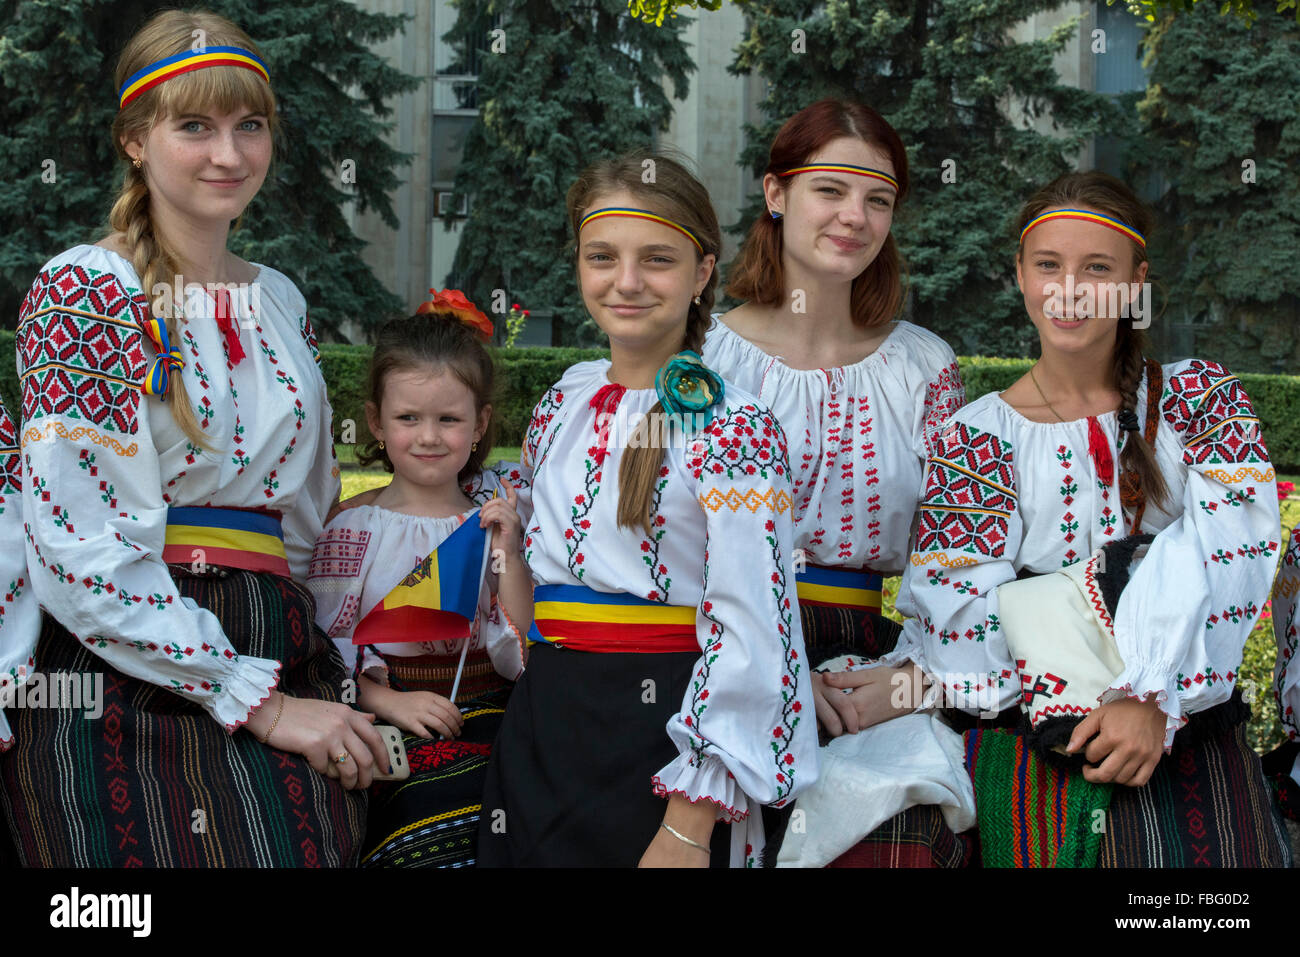 Girls In Folkloric Costumes, Independence Day Celebration, Piata Marii Adunari Nationale, Chisinau Stock Photo